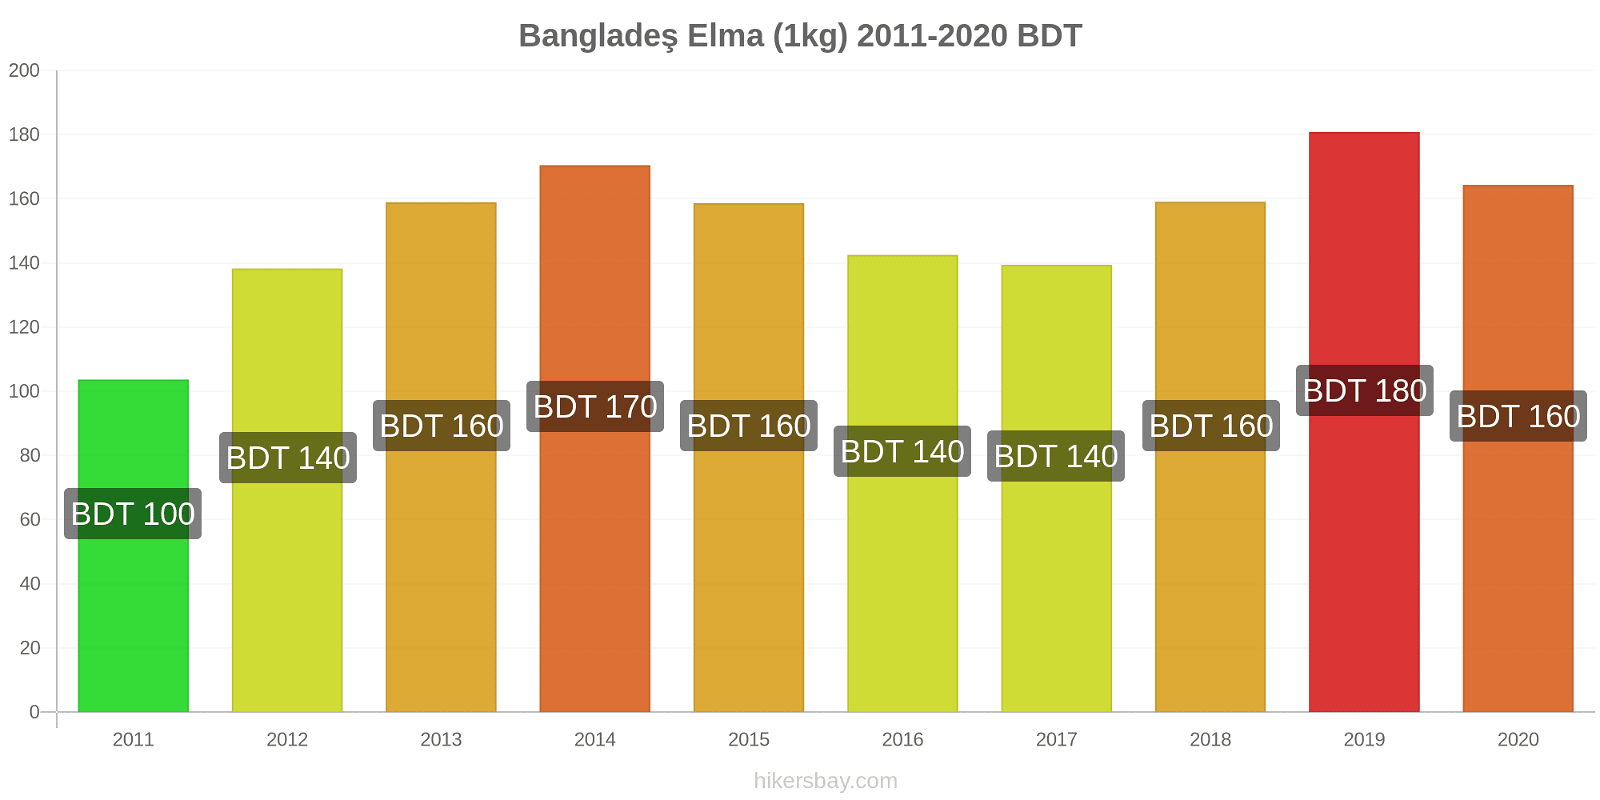 Bangladeş fiyat değişiklikleri Elma (1kg) hikersbay.com